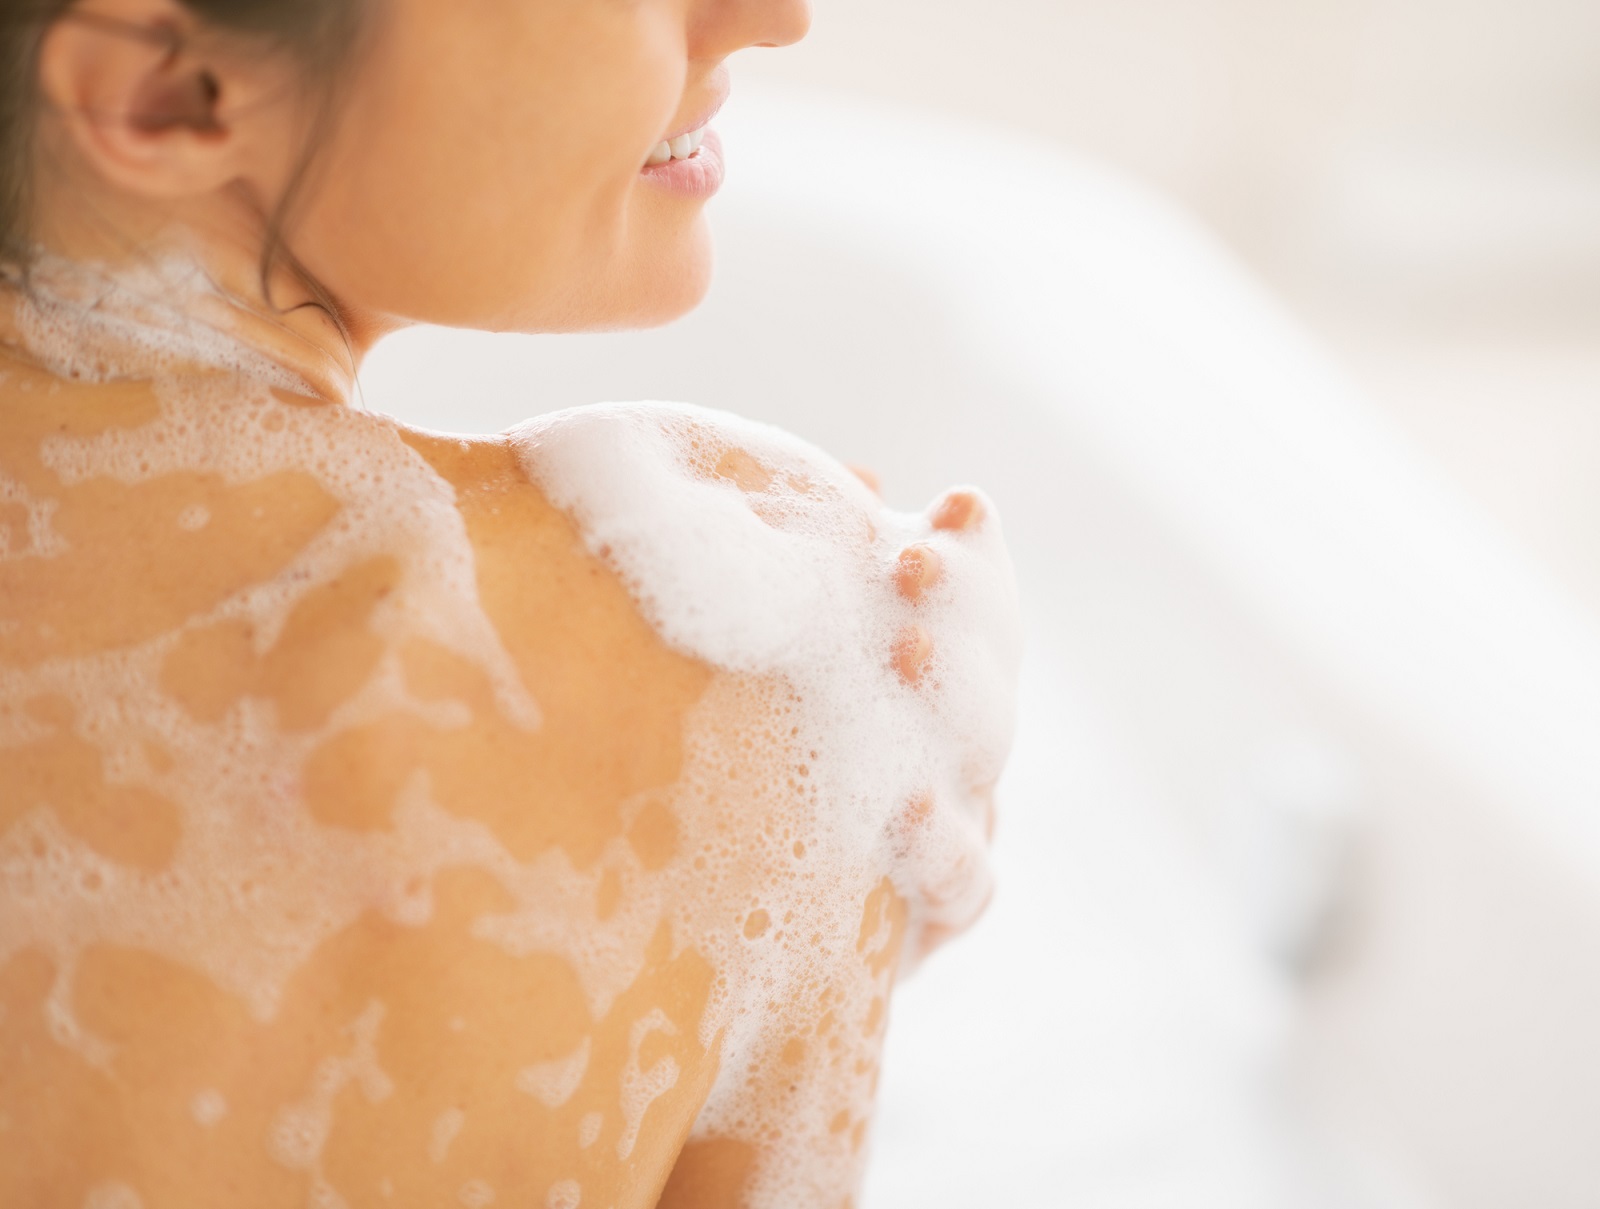 Sử dụng sữa tắm cho da khô để chăm sóc cơ thể vào những ngày hè nóng bức (nguồn ảnh: Internet).